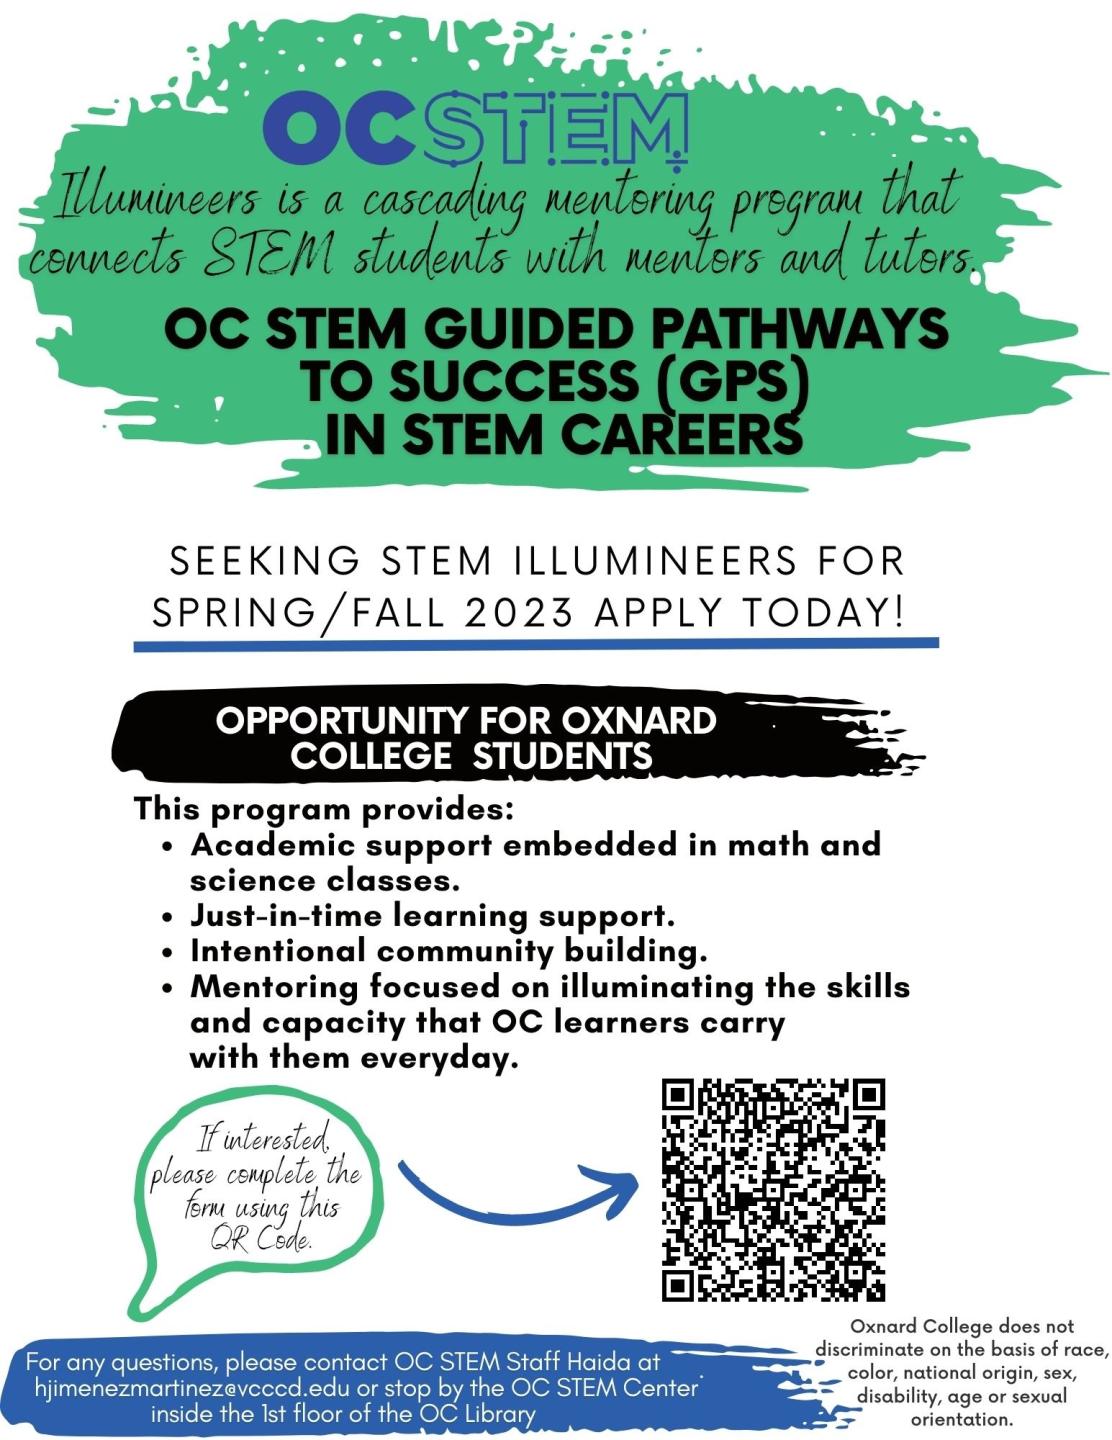 OC STEM Spring/Fall 2023 Illumineers hiring flyer